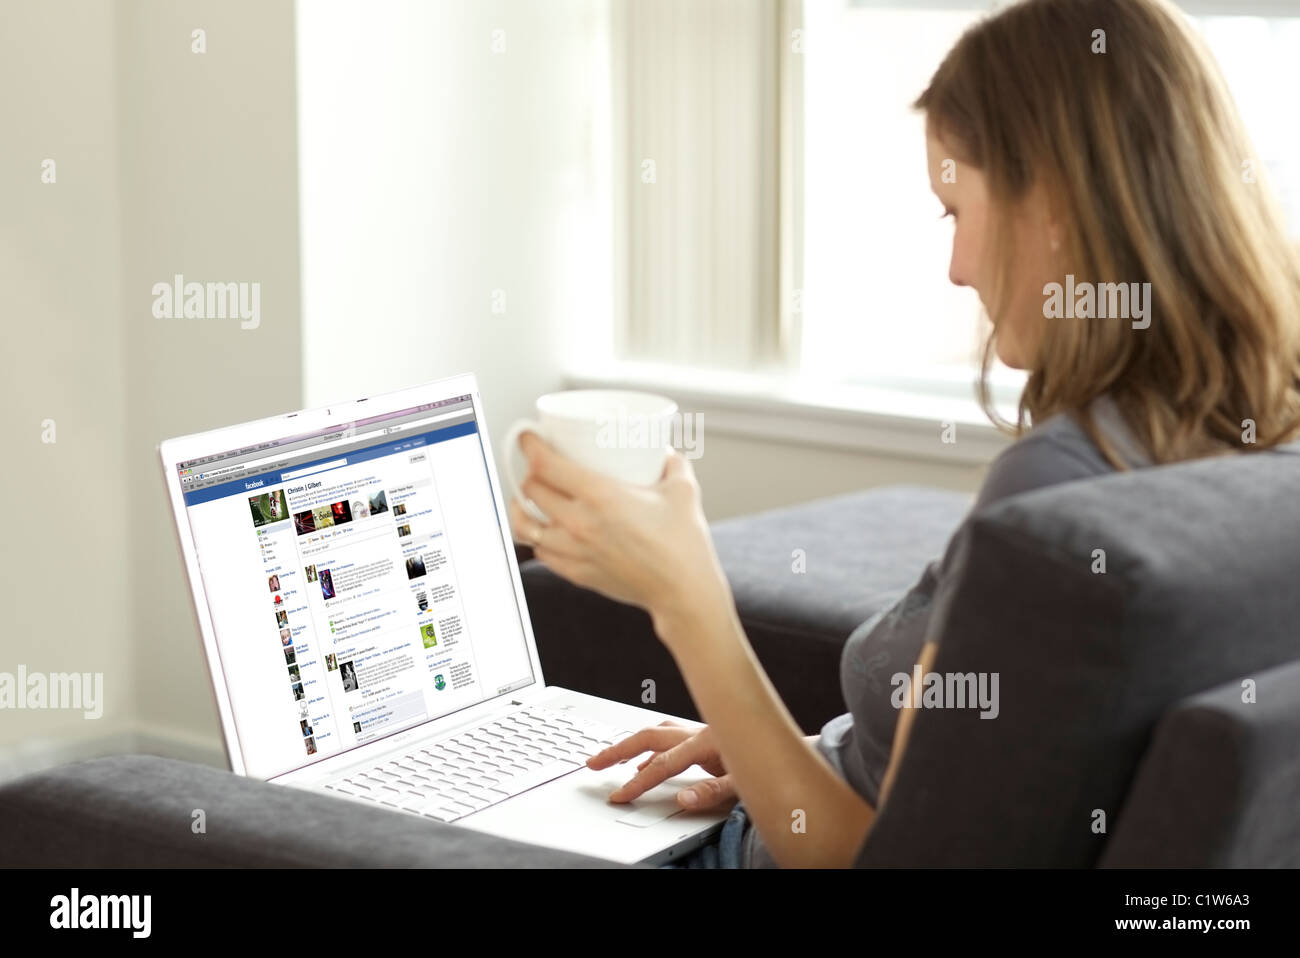 Donna di oziare nel soggiorno mentre si verifica il suo account su Facebook su un computer portatile Foto Stock